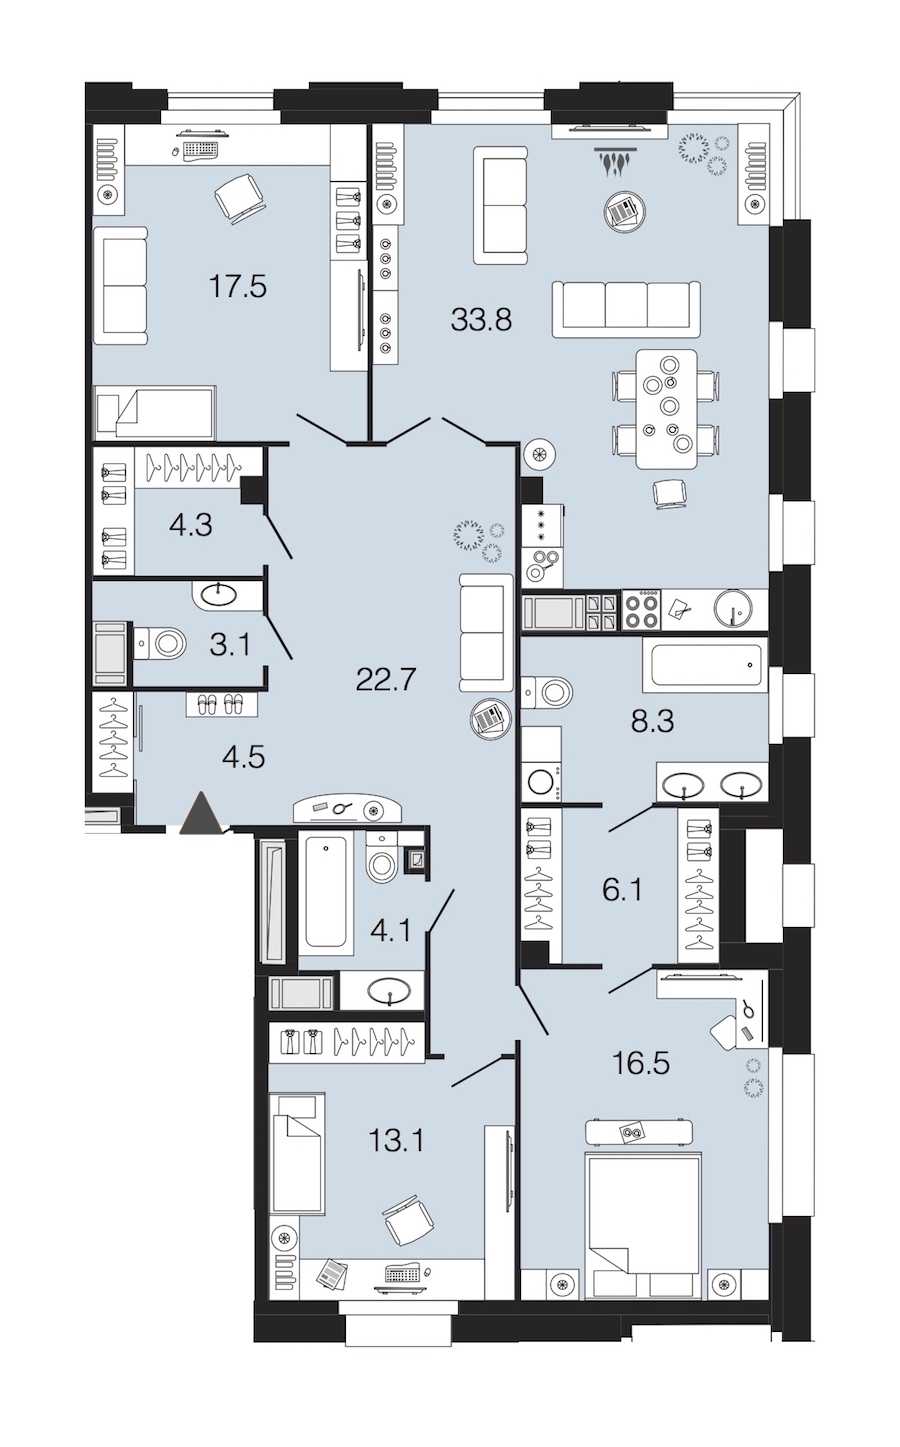 Трехкомнатная квартира в : площадь 134 м2 , этаж: 5 – купить в Санкт-Петербурге